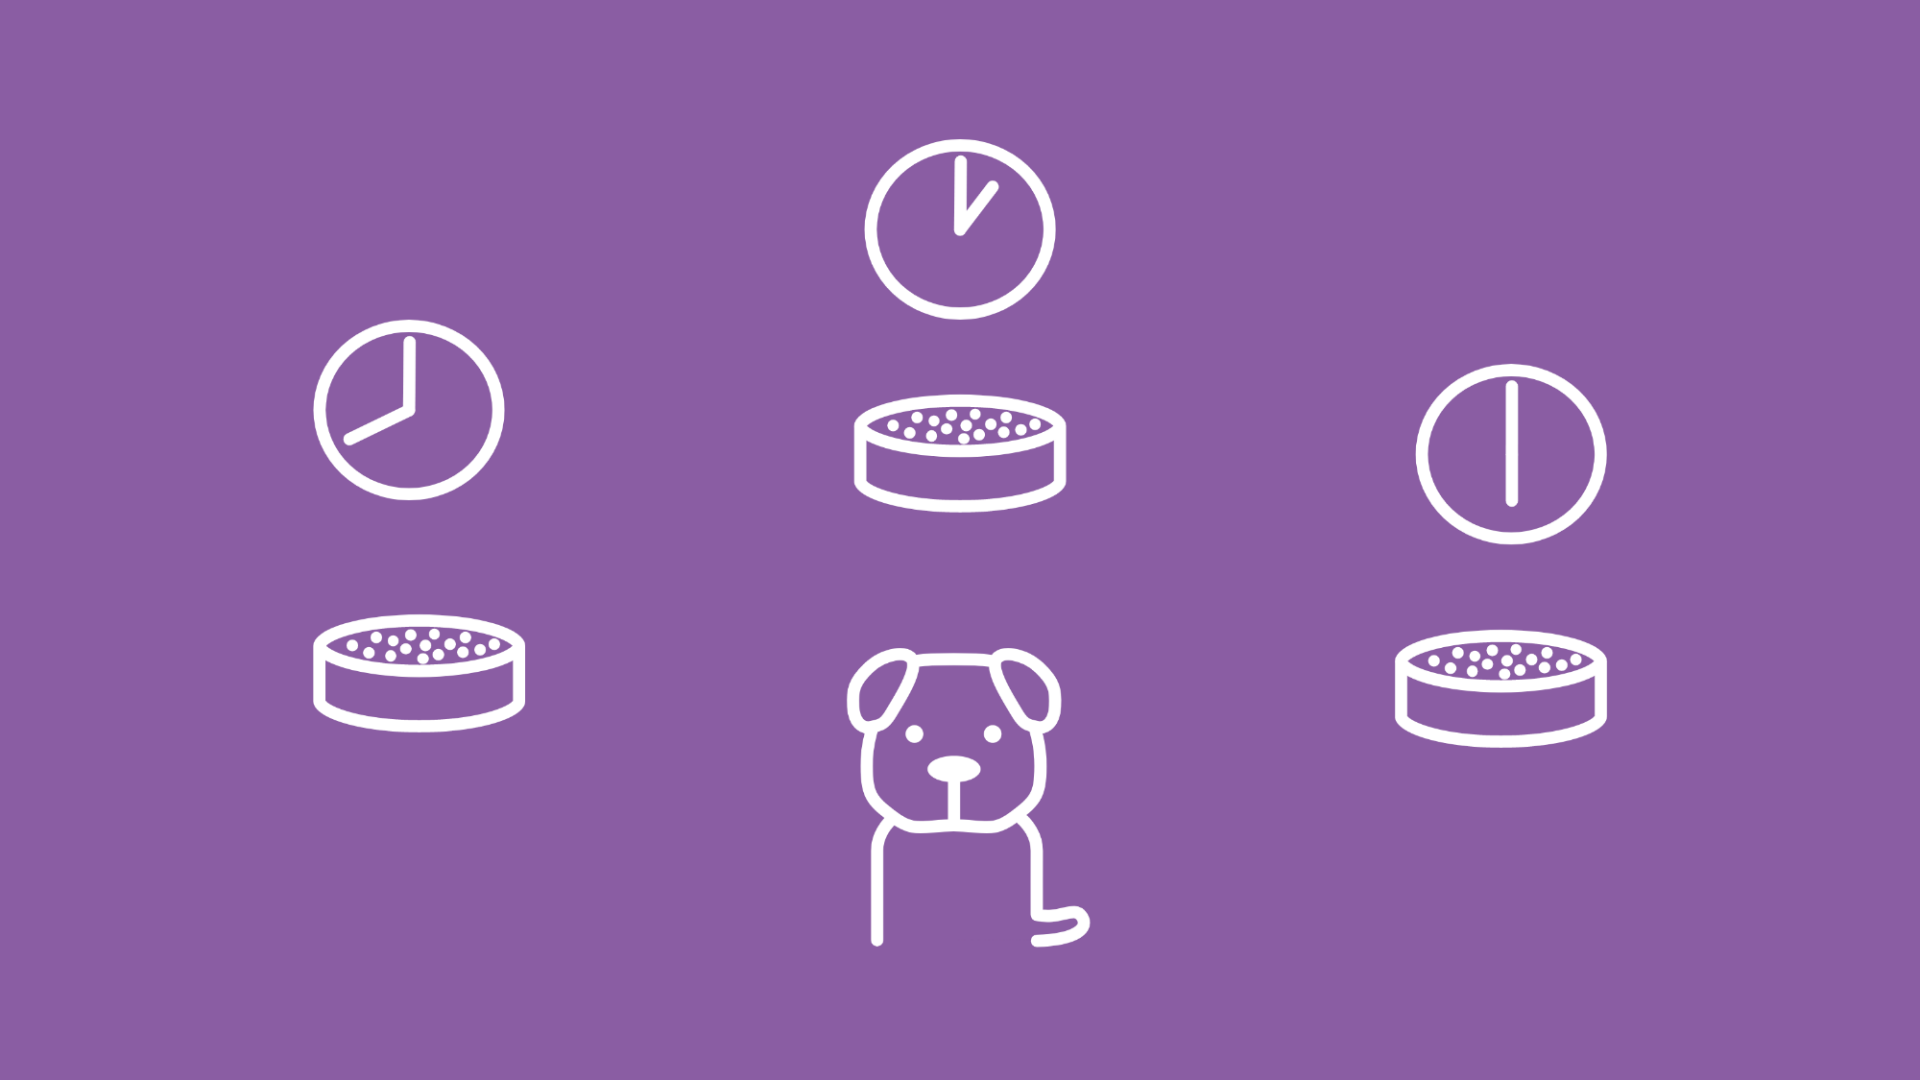 Ein Hundewelpe neben 3 gefüllten Futternäpfen, über denen jeweils eine andere Uhrzeit abgebildet wird, stellt die optimale Welpenernährung dar. 